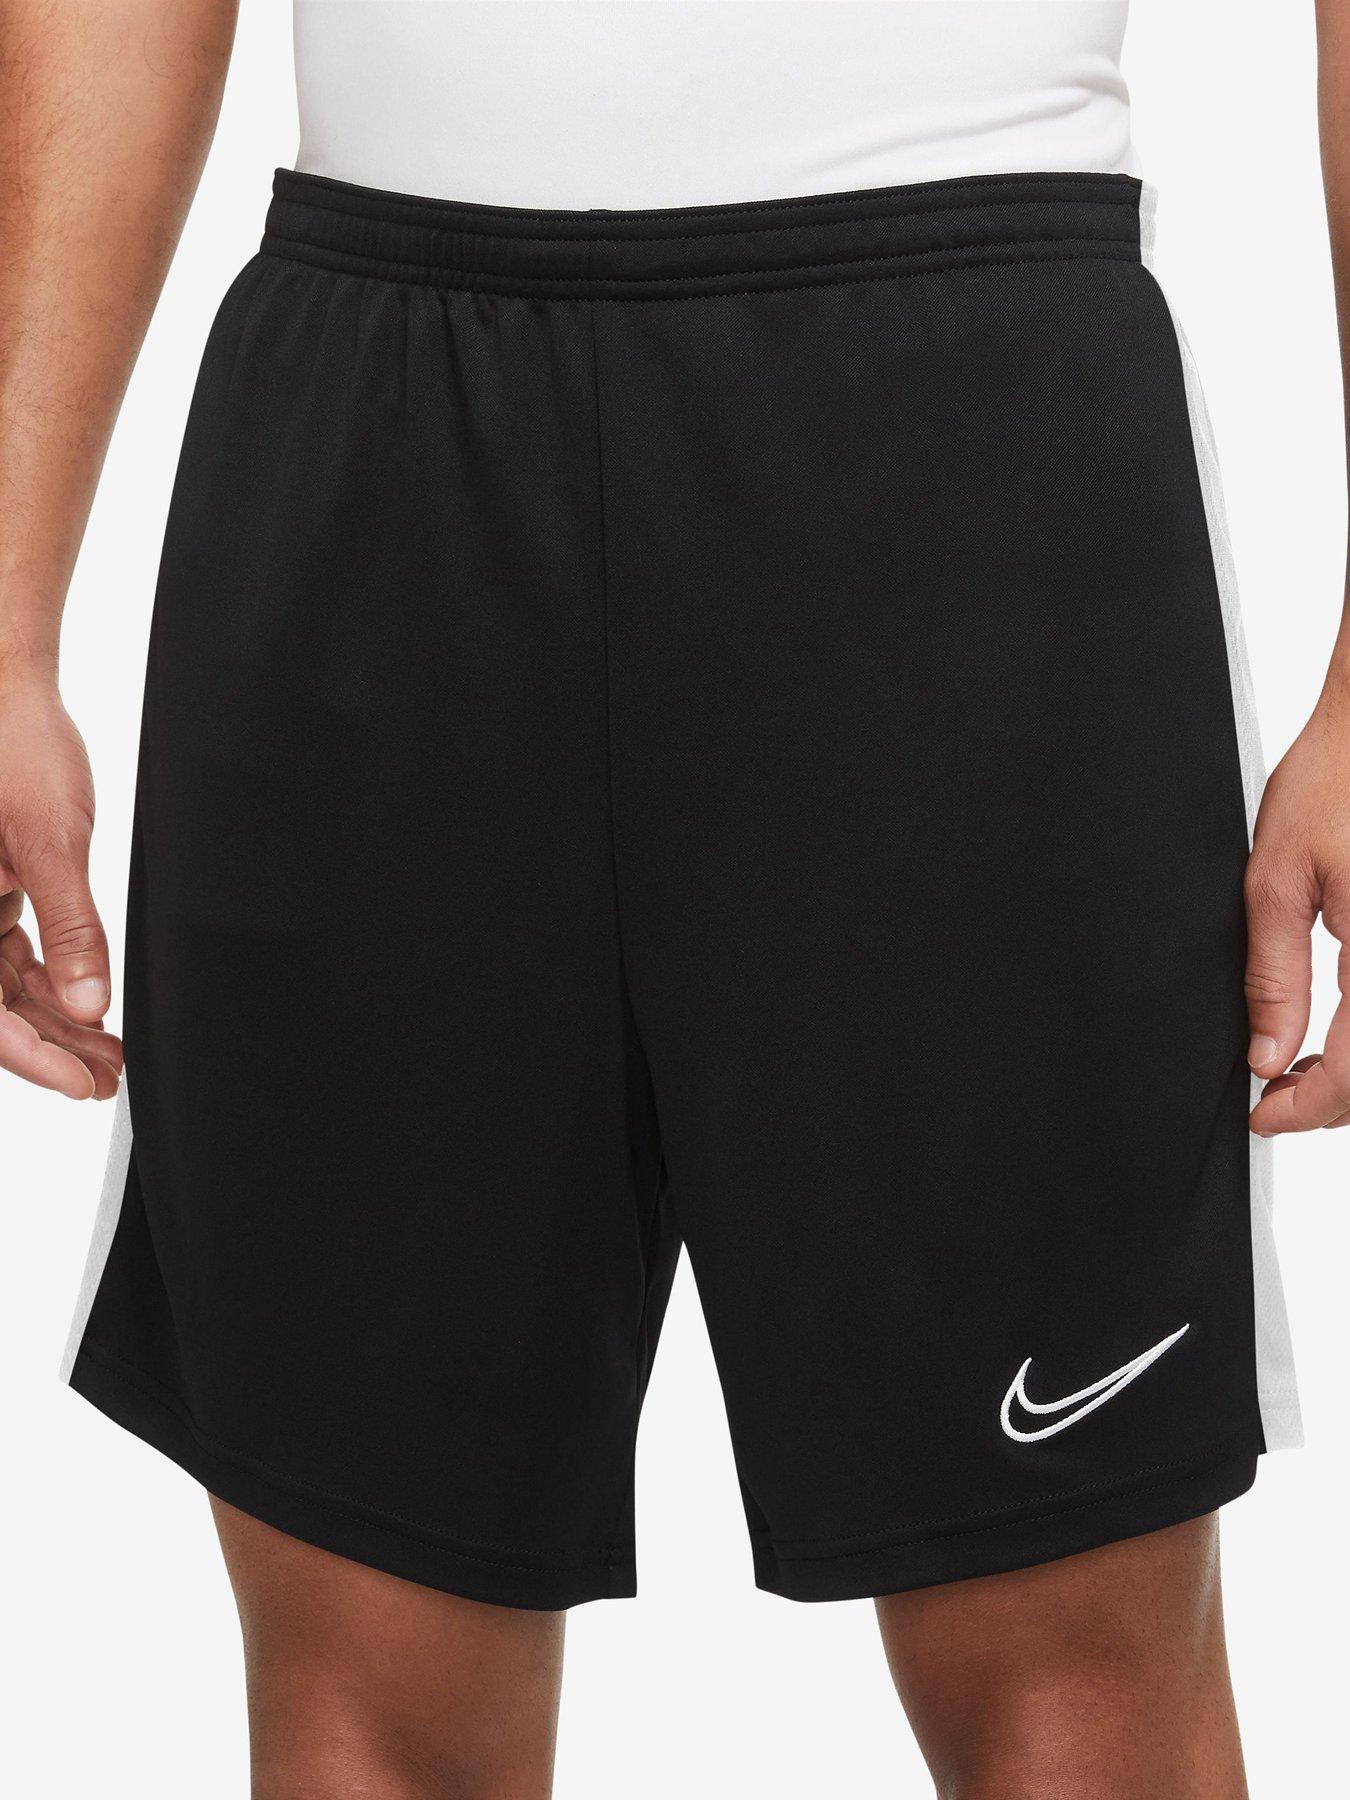 Fan Gear Volleyball Shorts. Nike IE